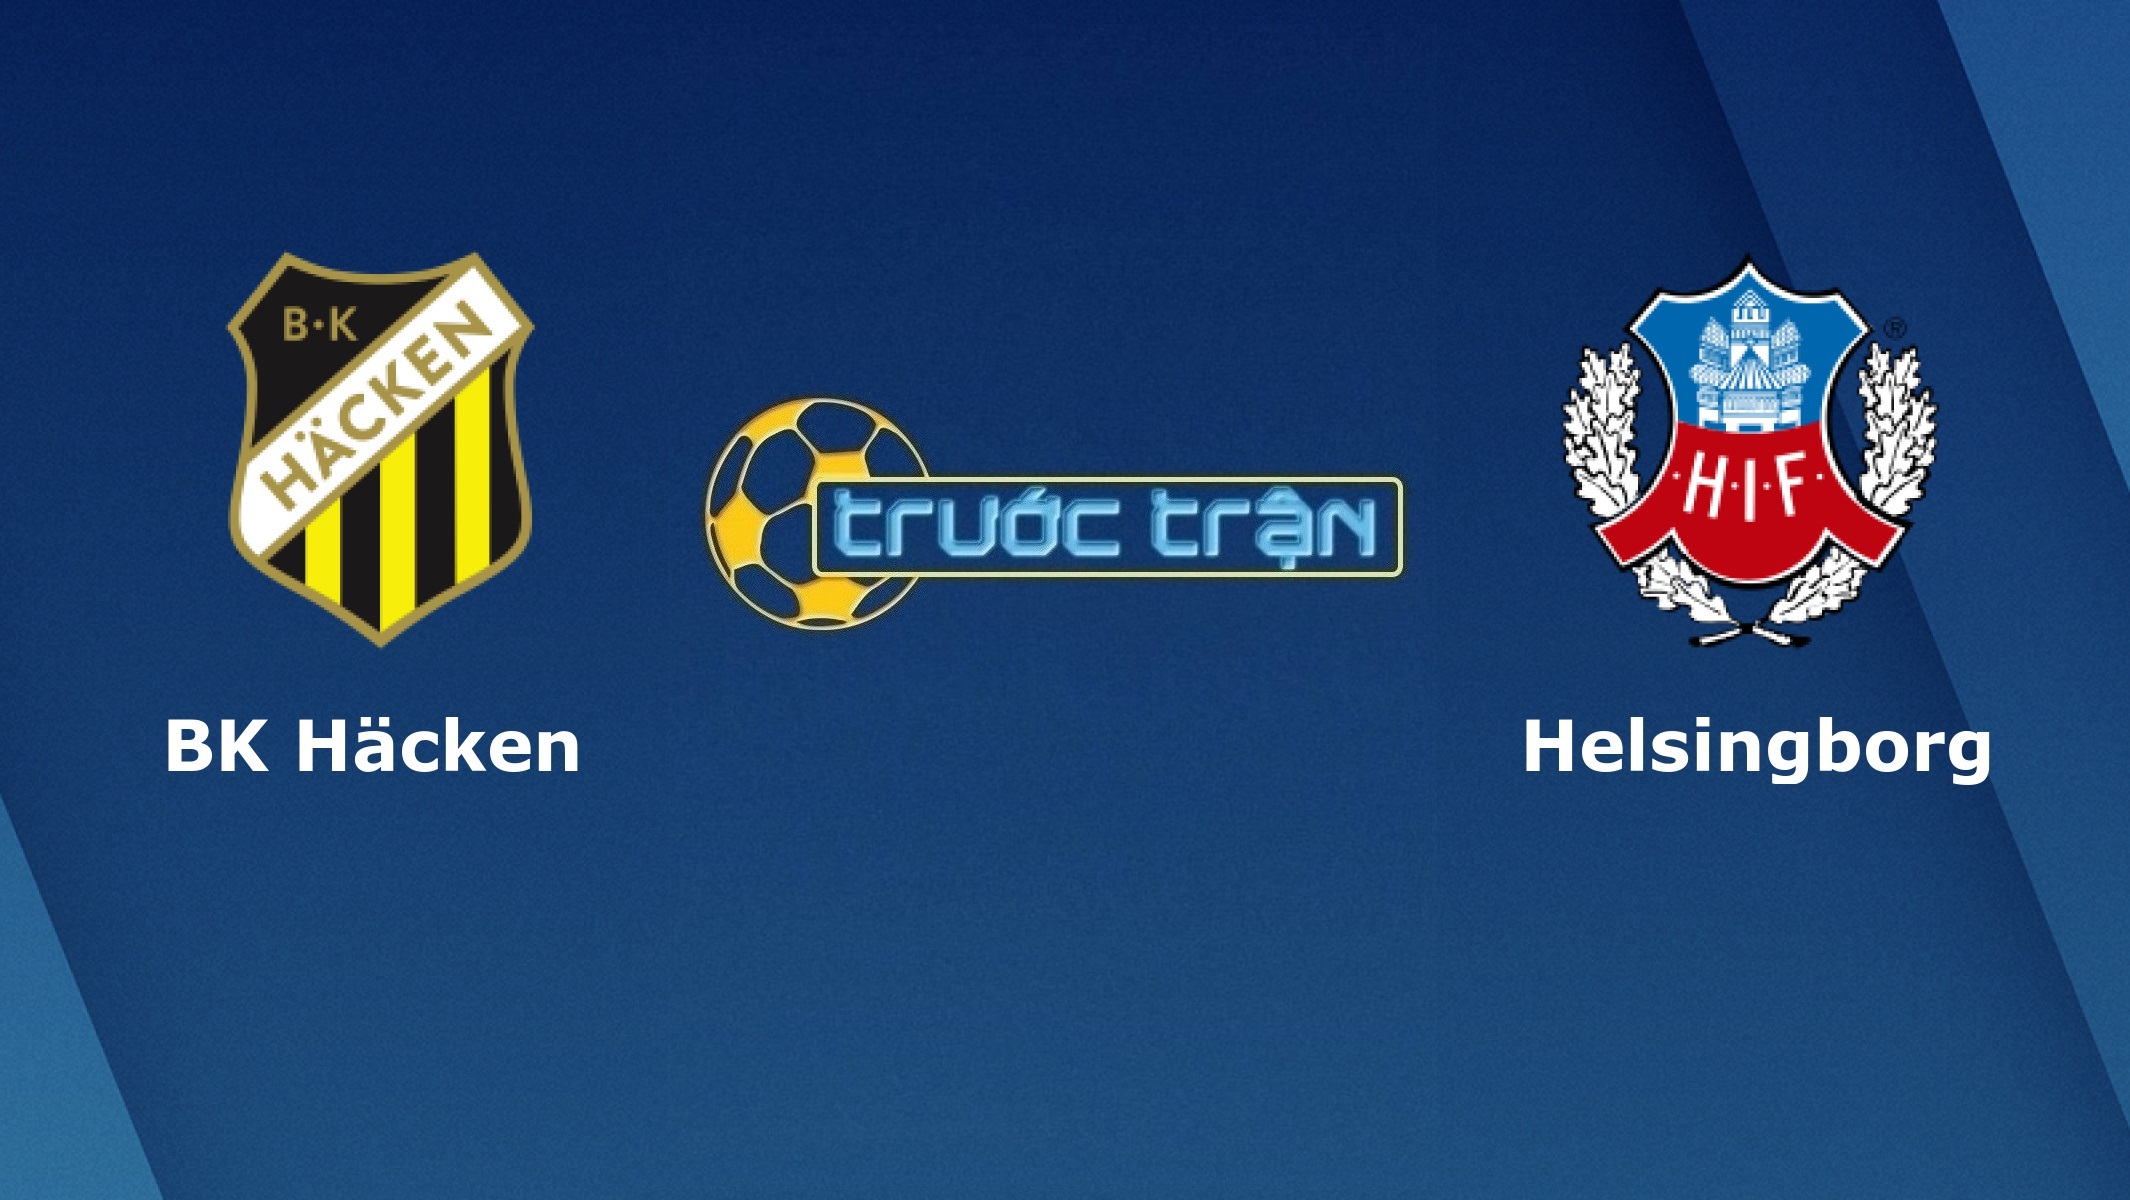 BK Hacken vs Helsingborgs – Tip kèo bóng đá hôm nay – 30/06